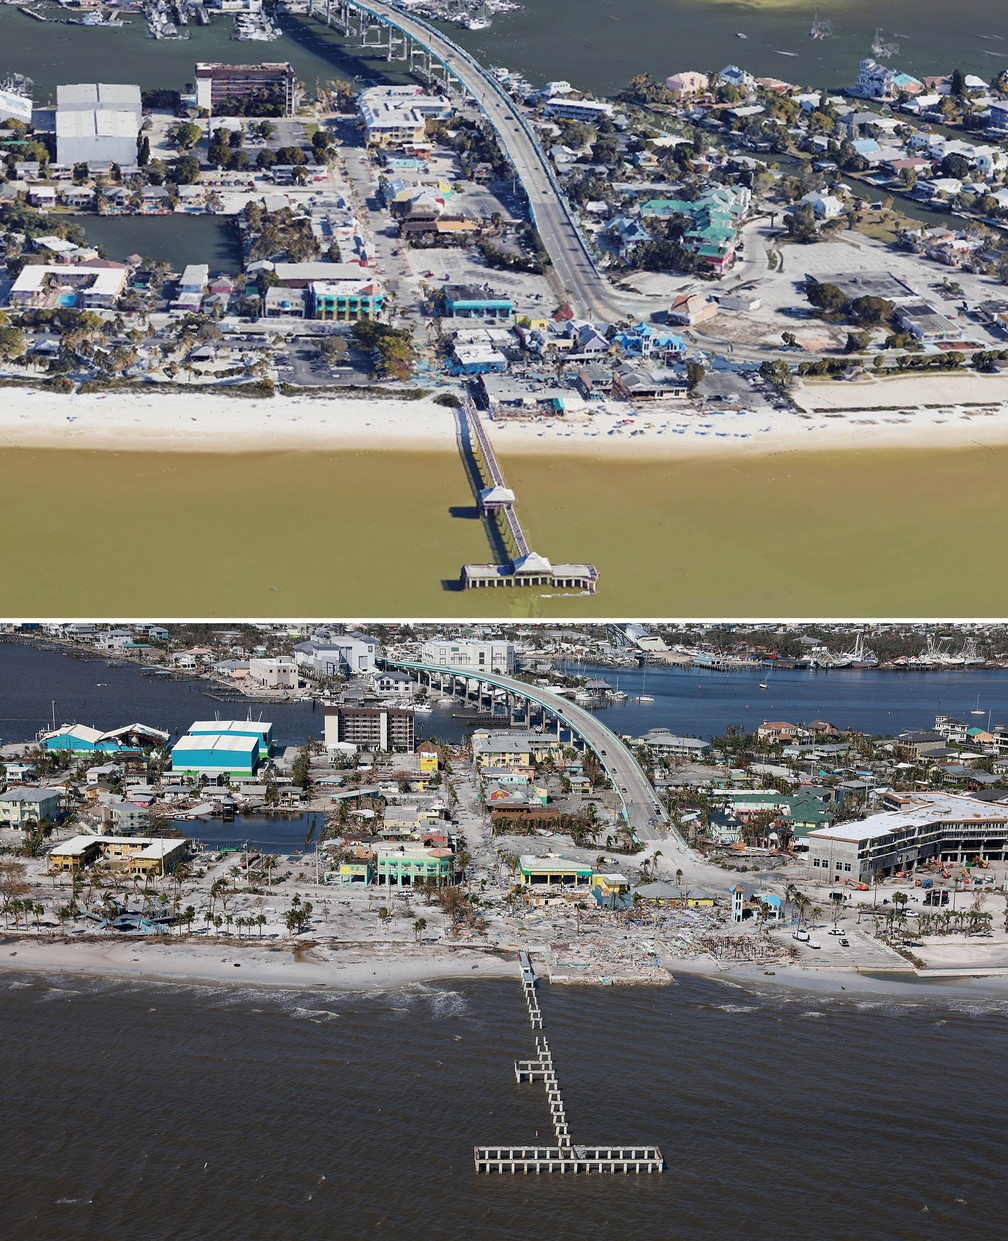 Píer e prédios em Fort Myers ficam danificados após passagem do furacão Ian pela Flórida, EUA — Foto: Google Earth e Joe Raedle/Getty Images North America/Getty Images via AFP